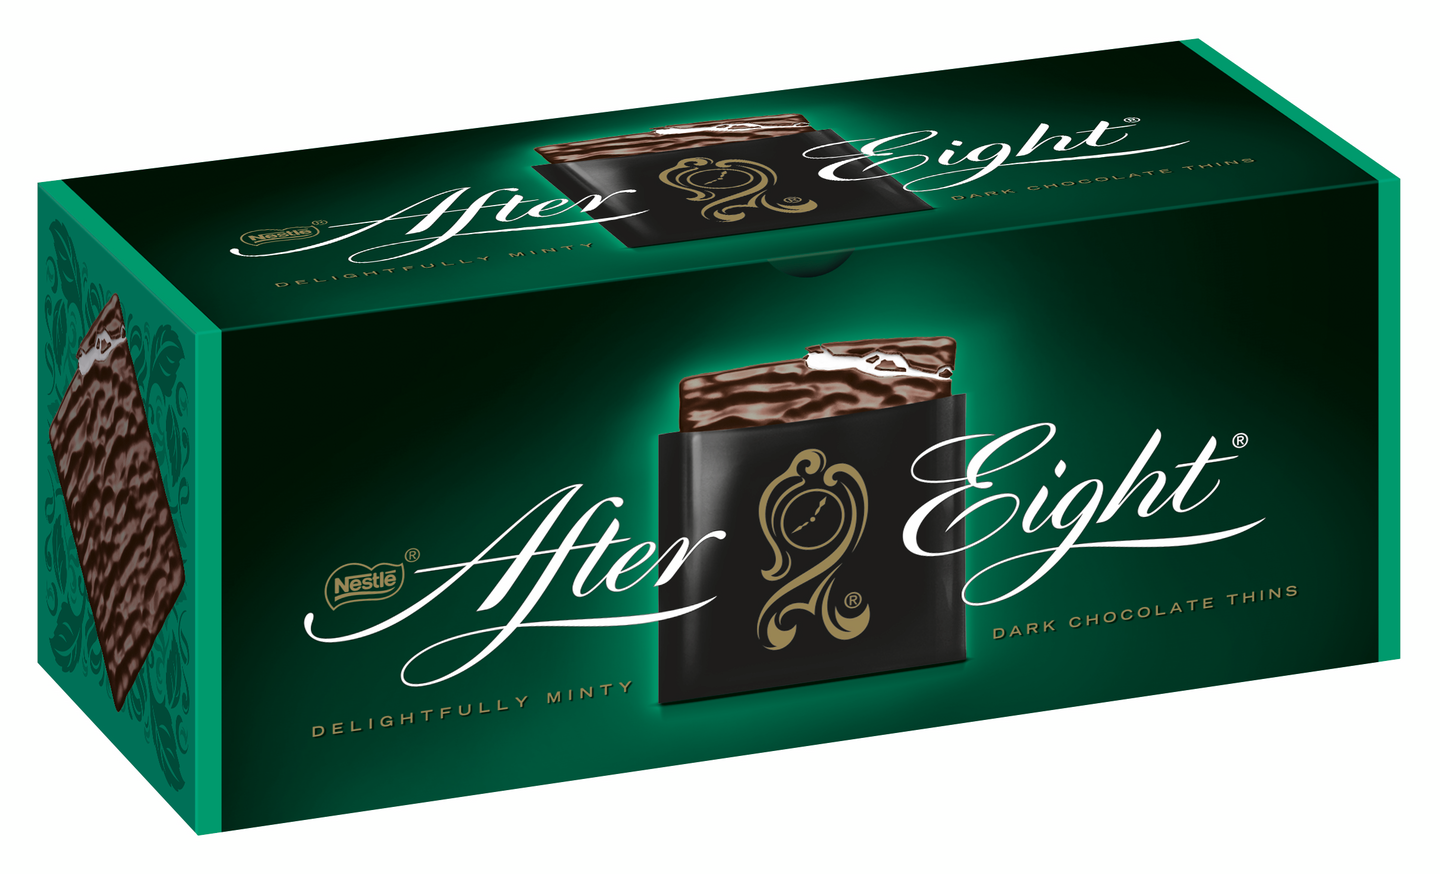 Nestle After Eight Mint suklaa 200g DIS — HoReCa-tukku Kespro